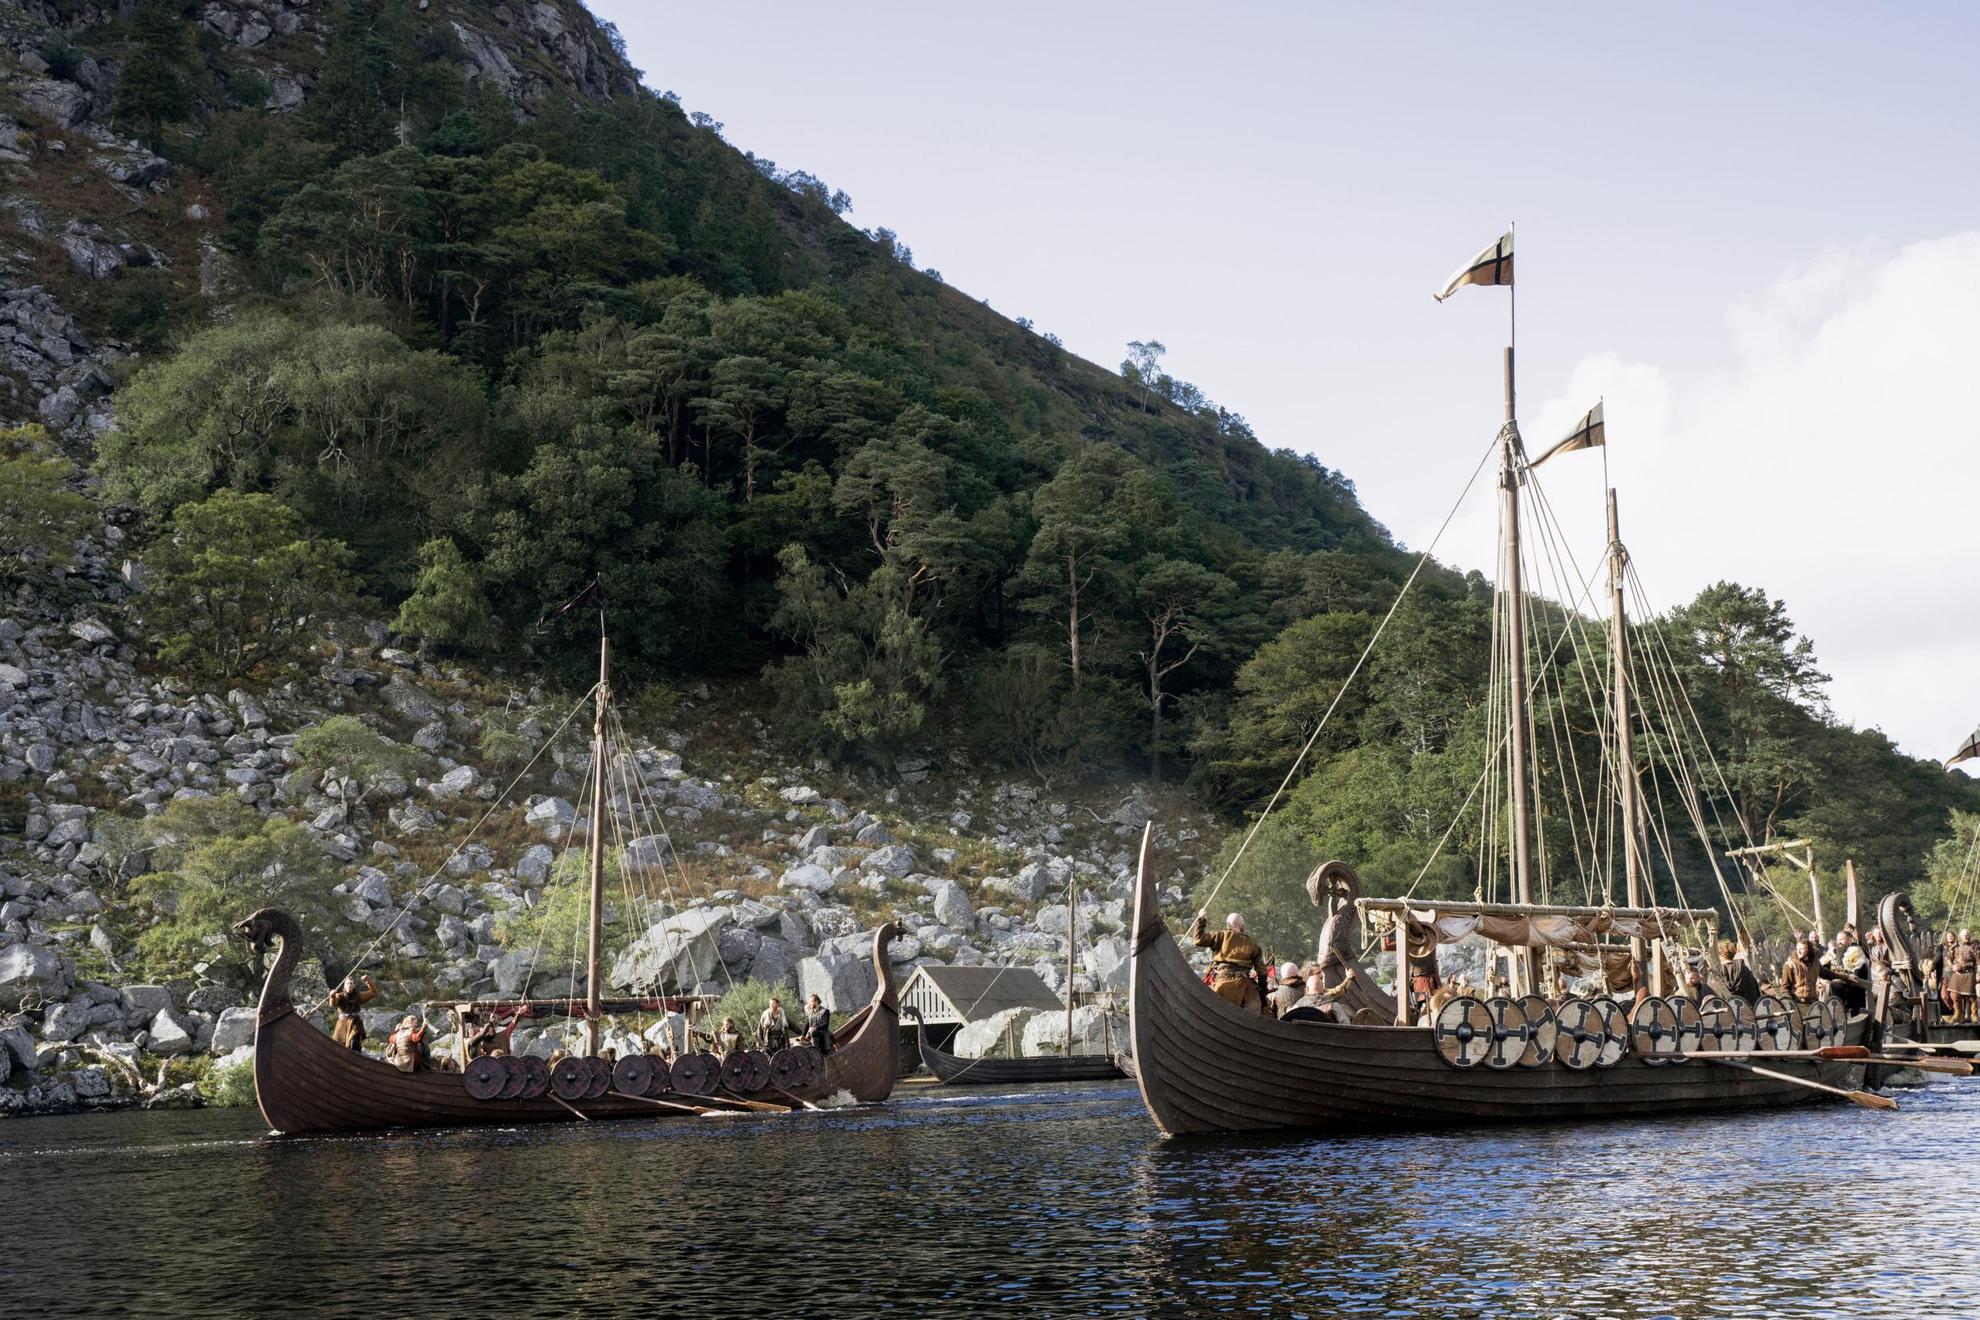 Vikingen in Vikingboten. Een afbeelding uit de tv-serie Vikings: Walhalla.